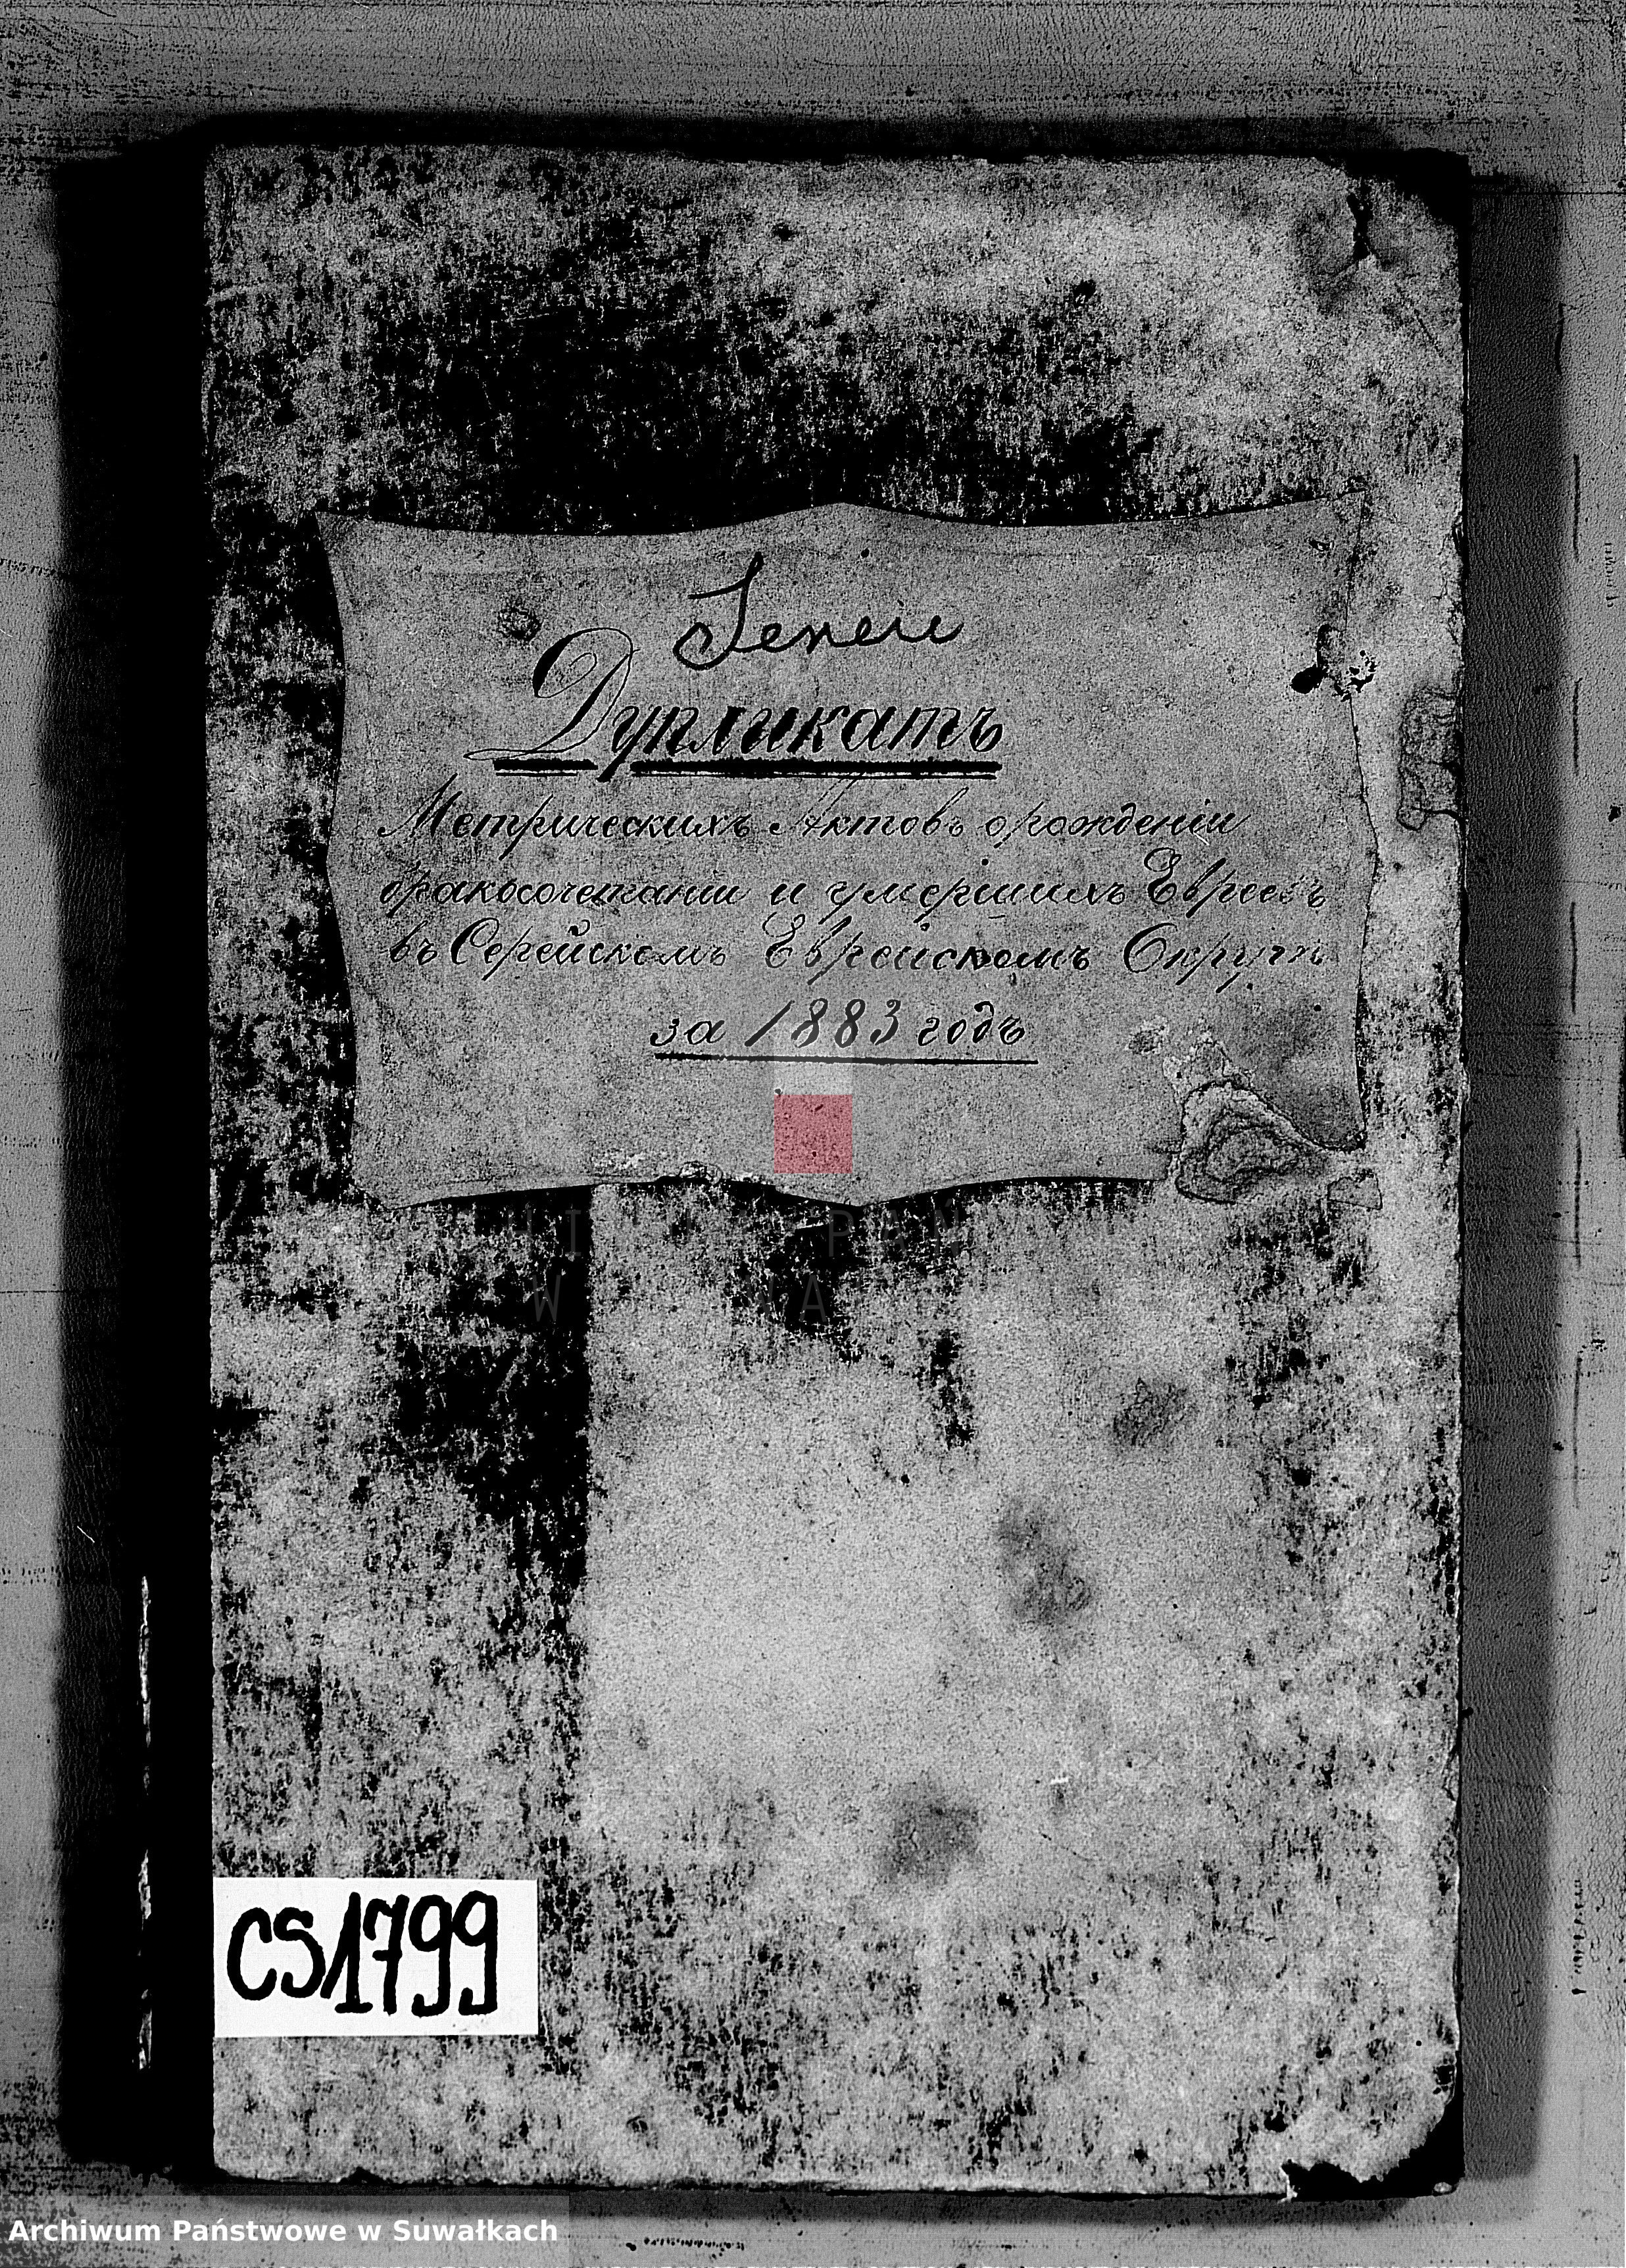 Skan z jednostki: Duplikat metričeskich aktov o roždeniu, brakosočemanii i umeršich Evrejach v Serejskom Evrejskom Okrug za 1883 god